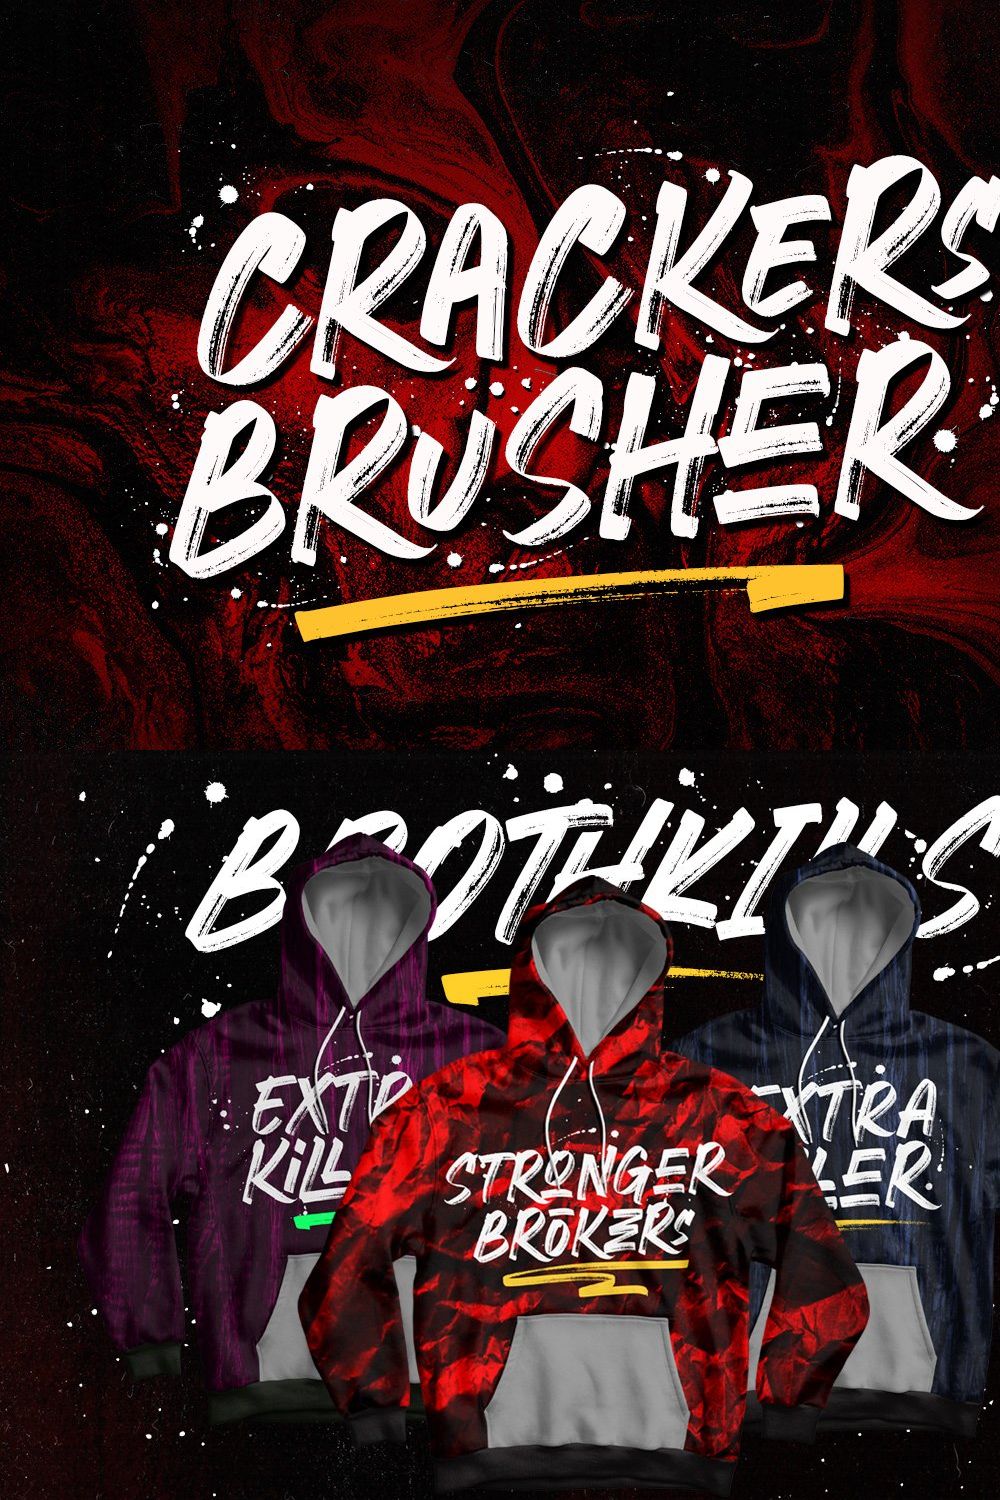 Crackers Brusher - Brush Street V.2 pinterest preview image.